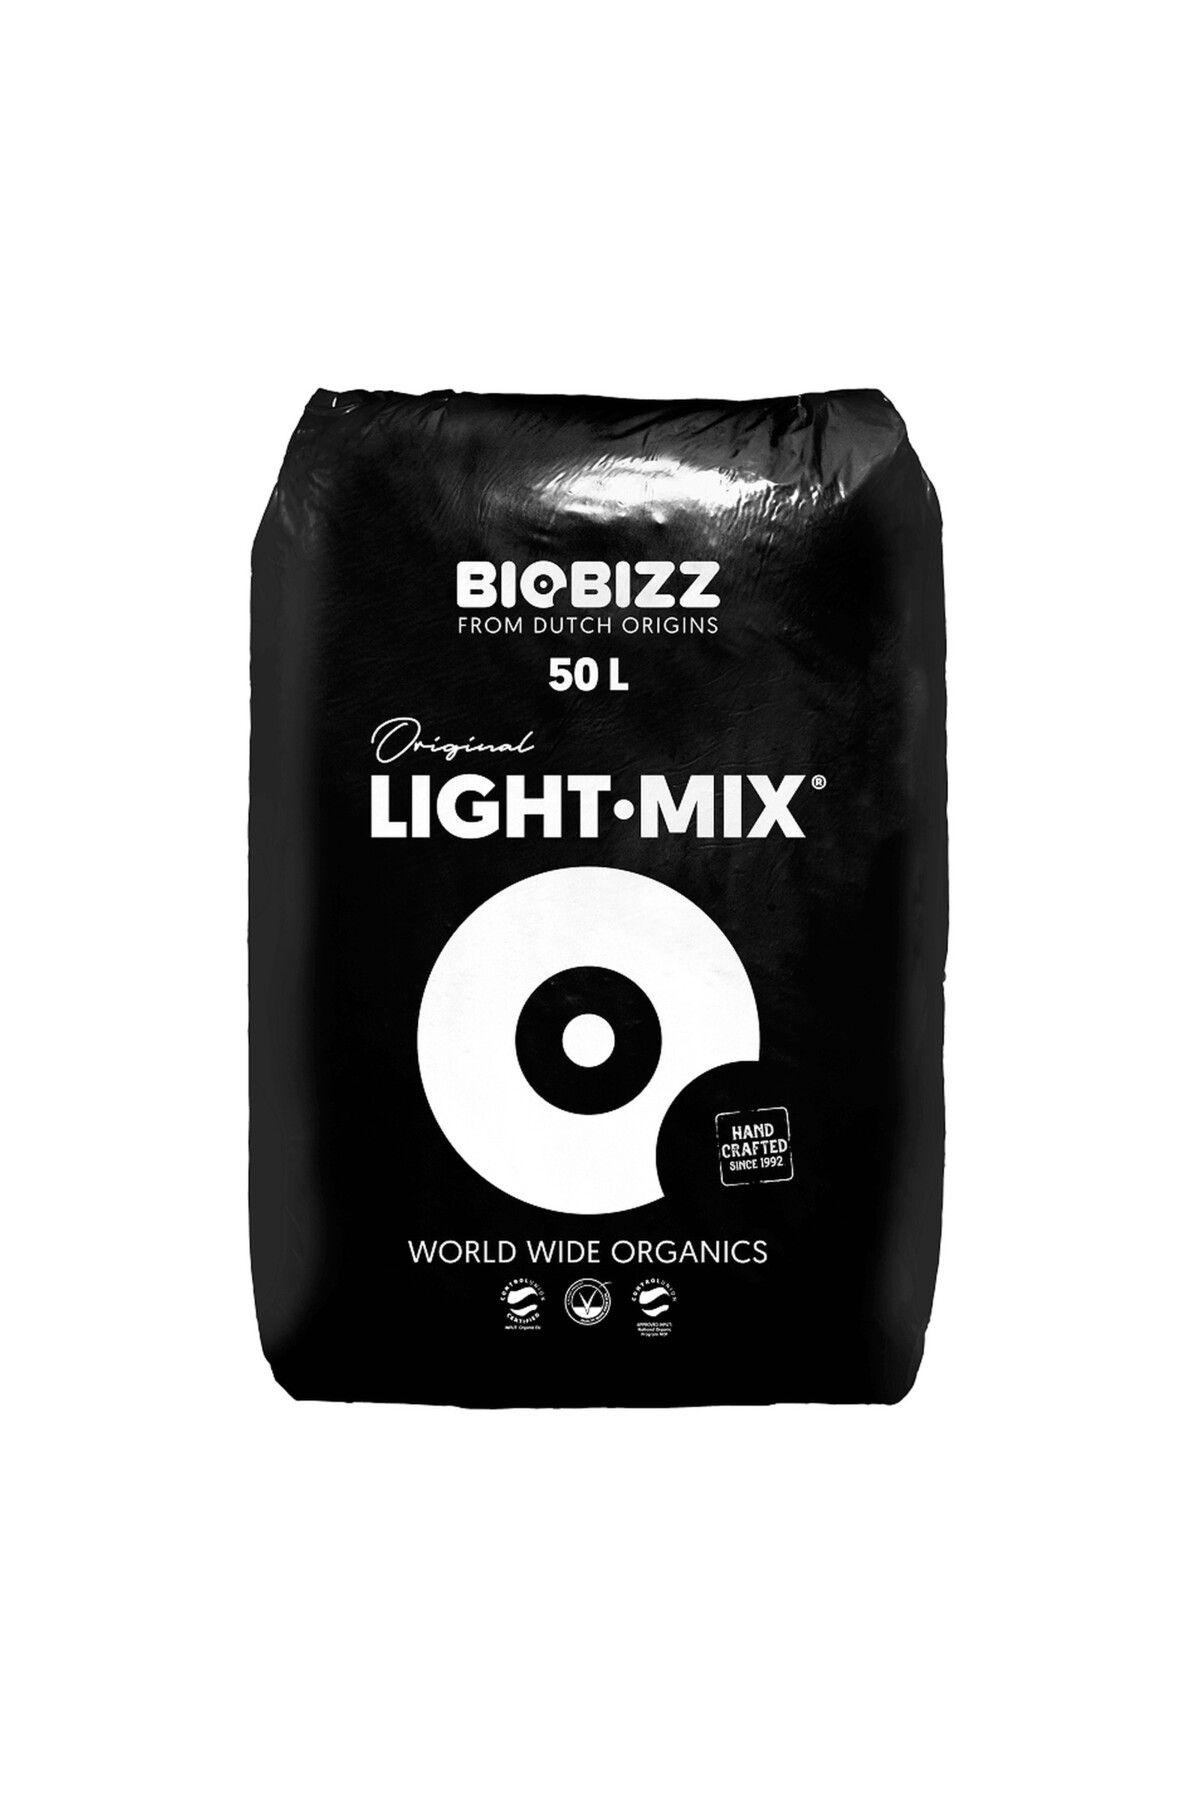 BioBizz Light Mix 50 Litre